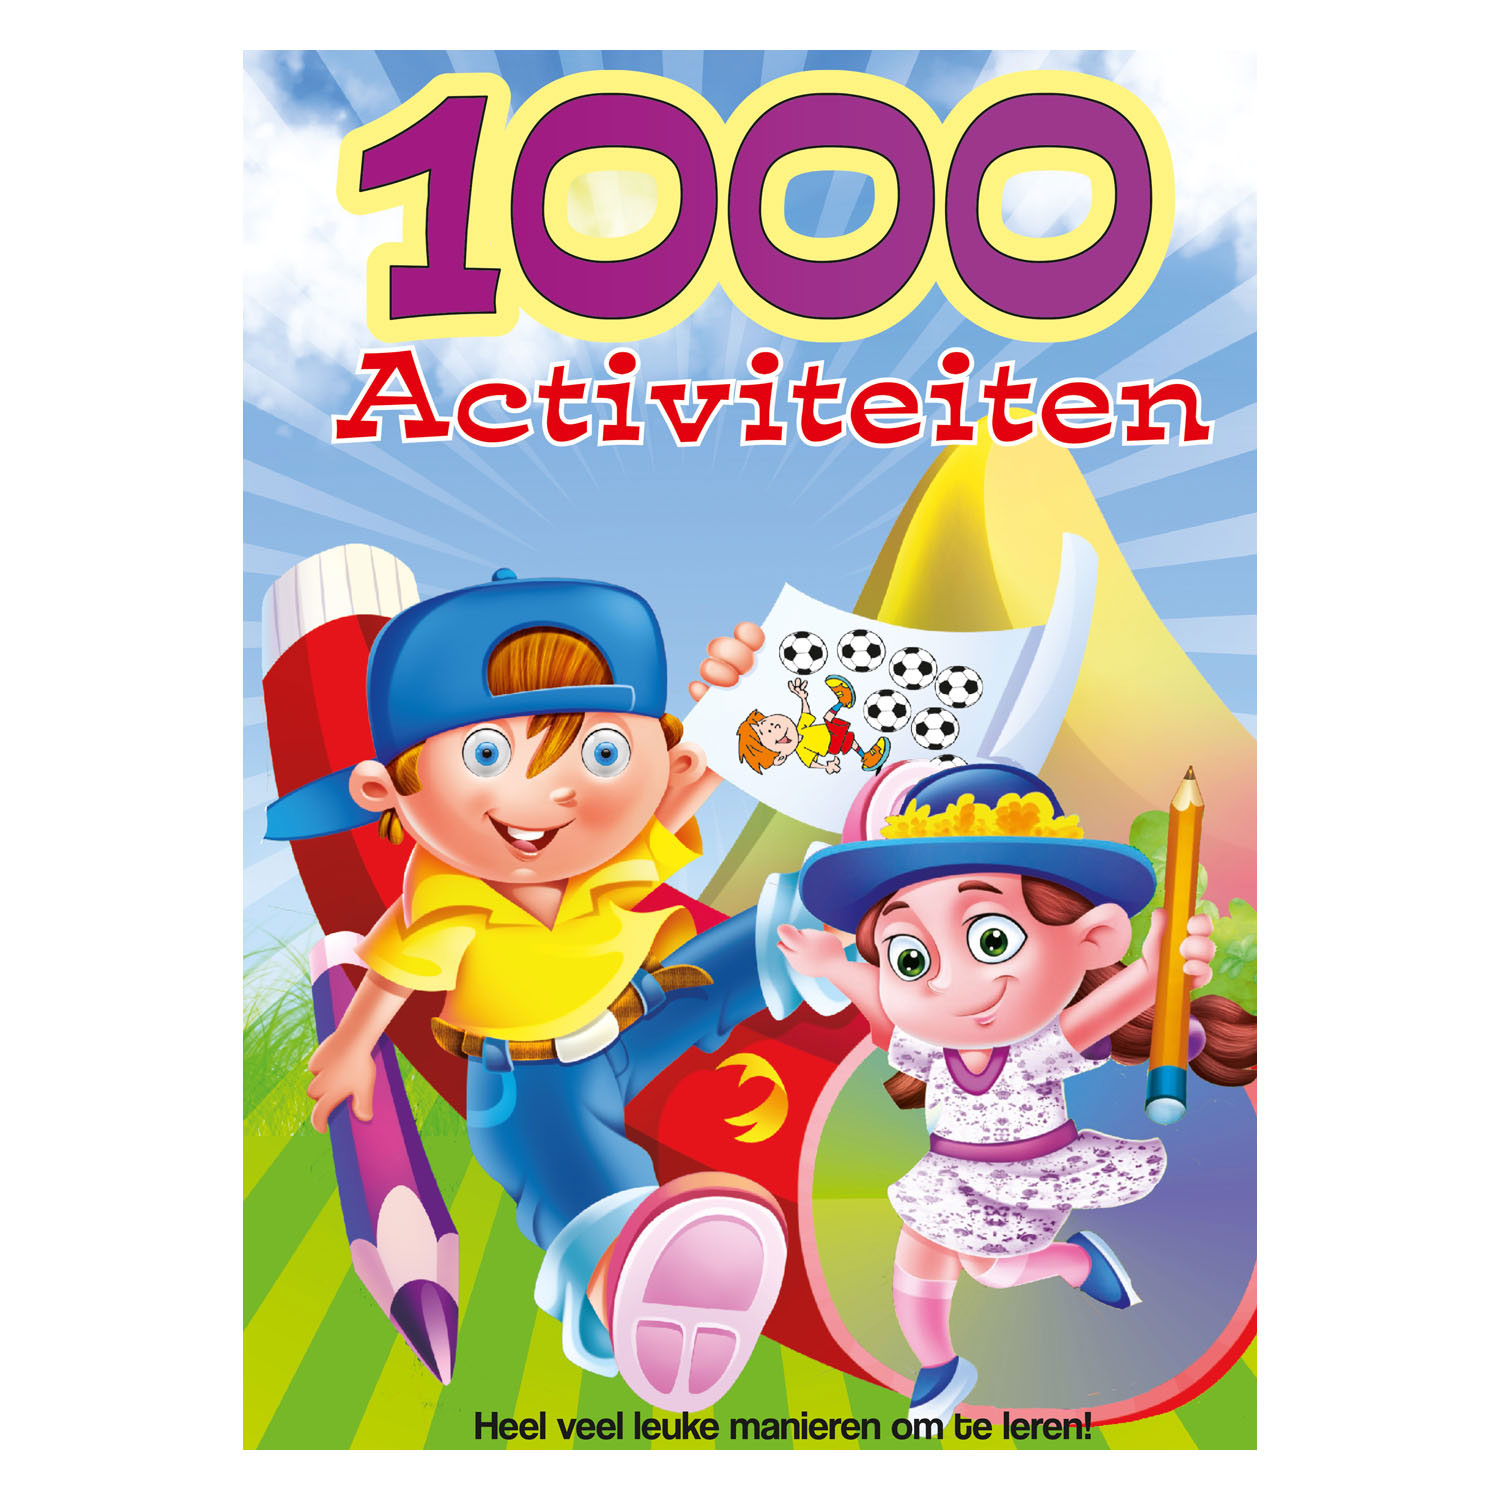 1000 Aktivitätsbuch